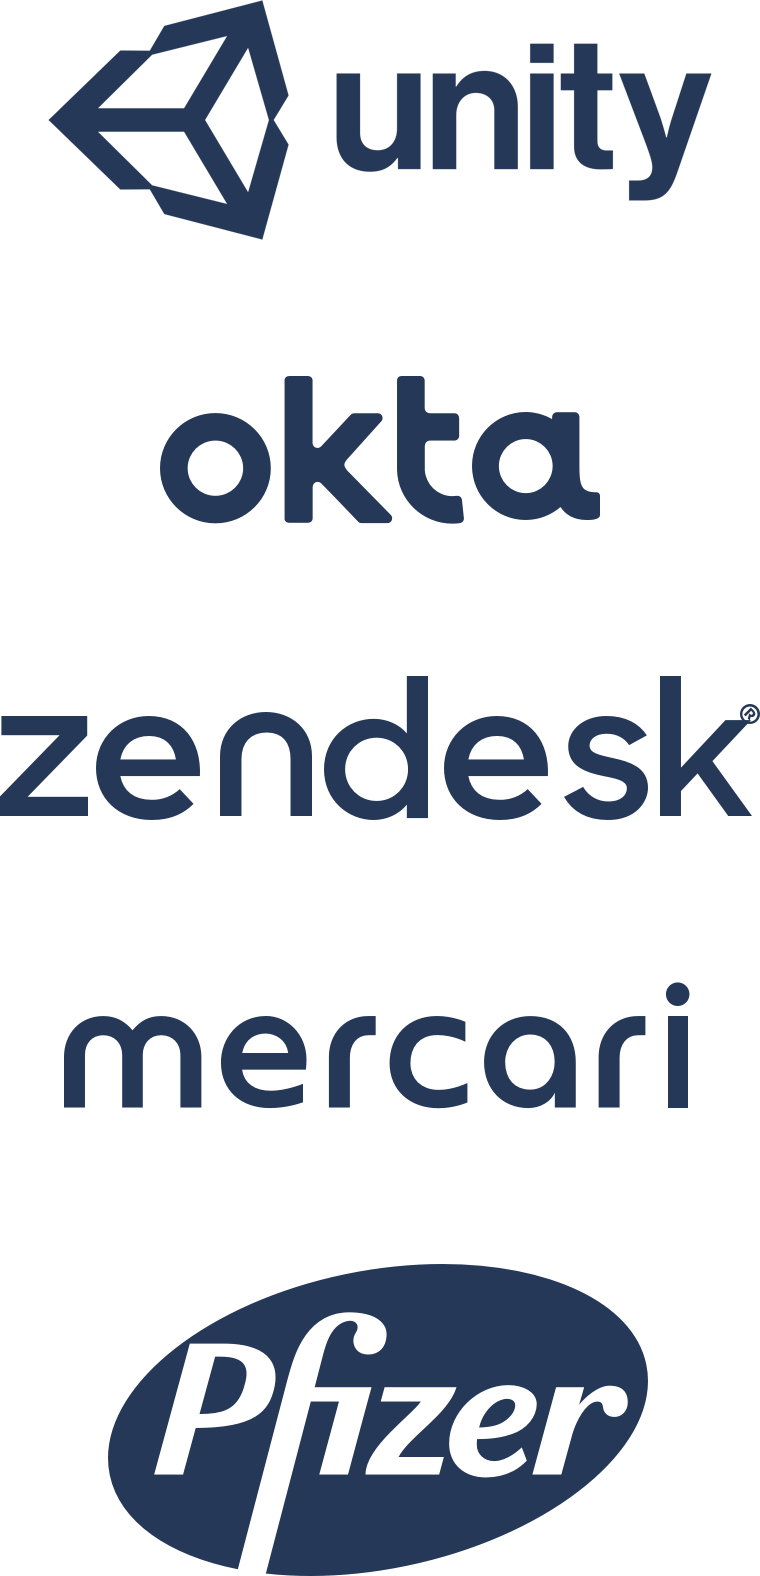 Logotipos da Unity, da Okta, da Zendesk, da Mercari e da Pfizer